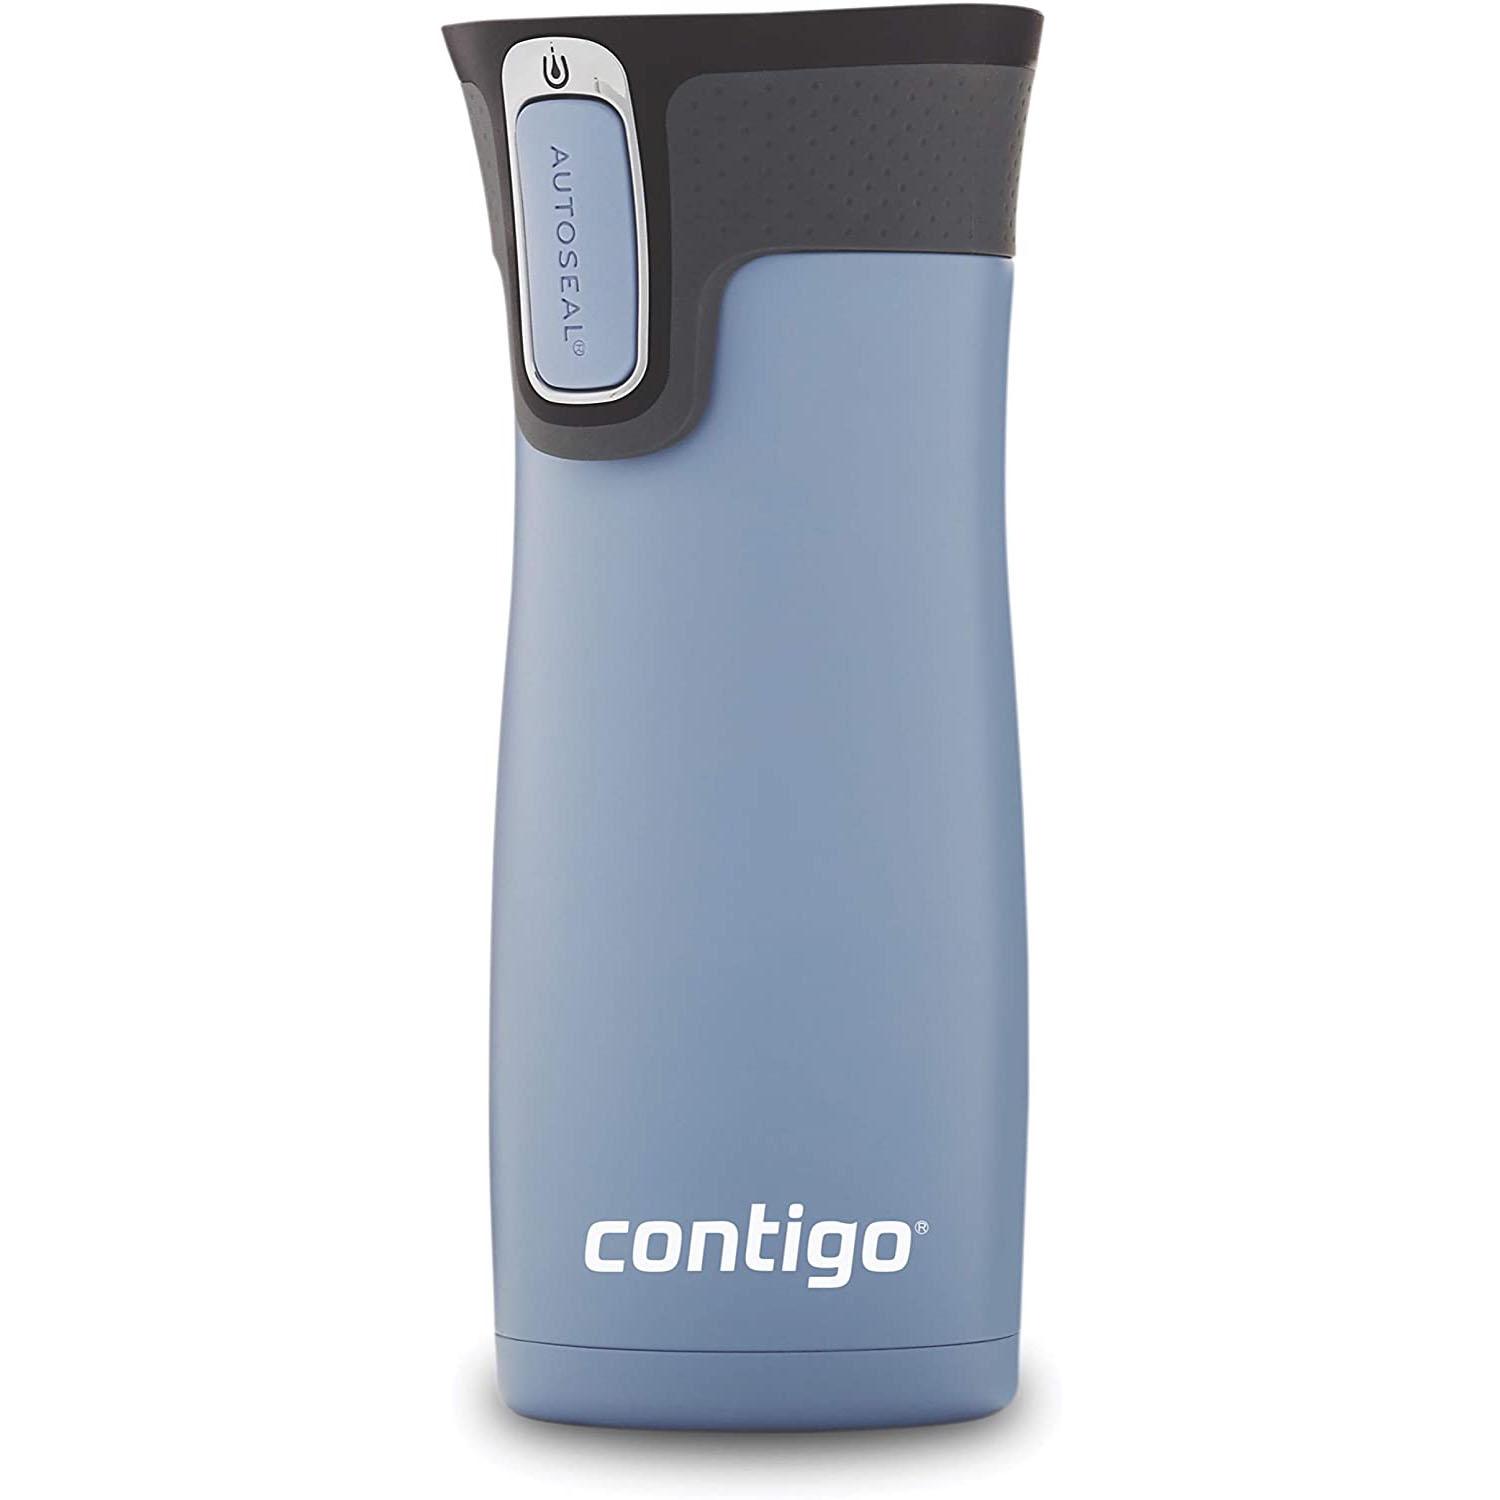 Contigo AUTOSEAL Vacuum-Insulated Travel Mug for $14.65